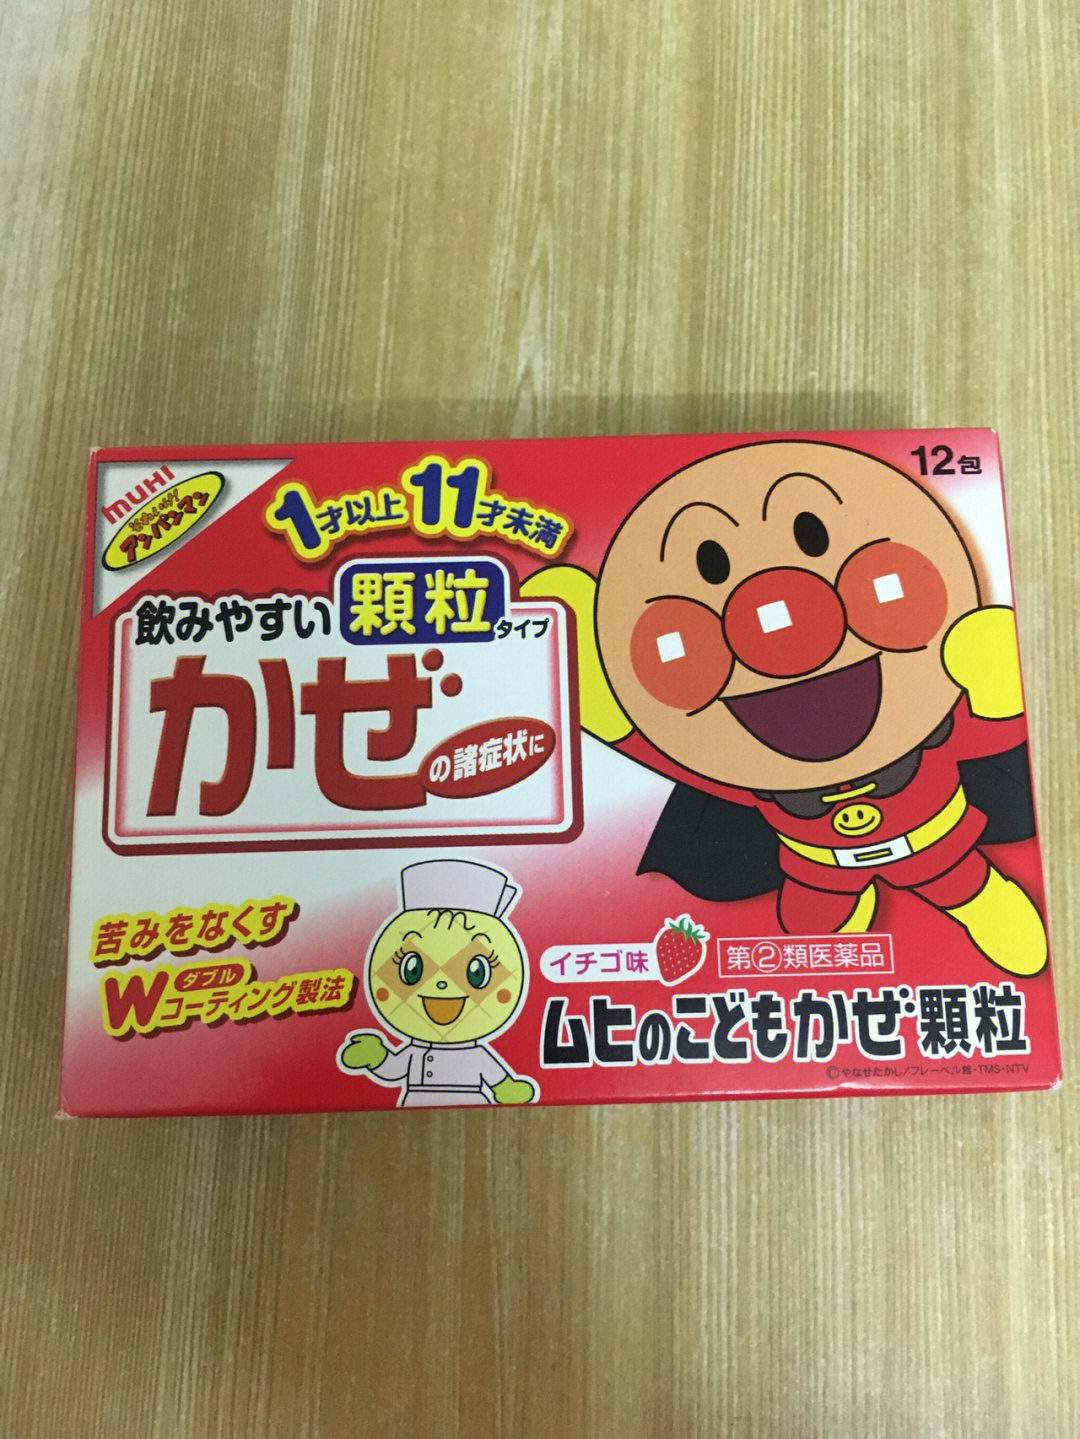 日本面包超人草莓味感冒水